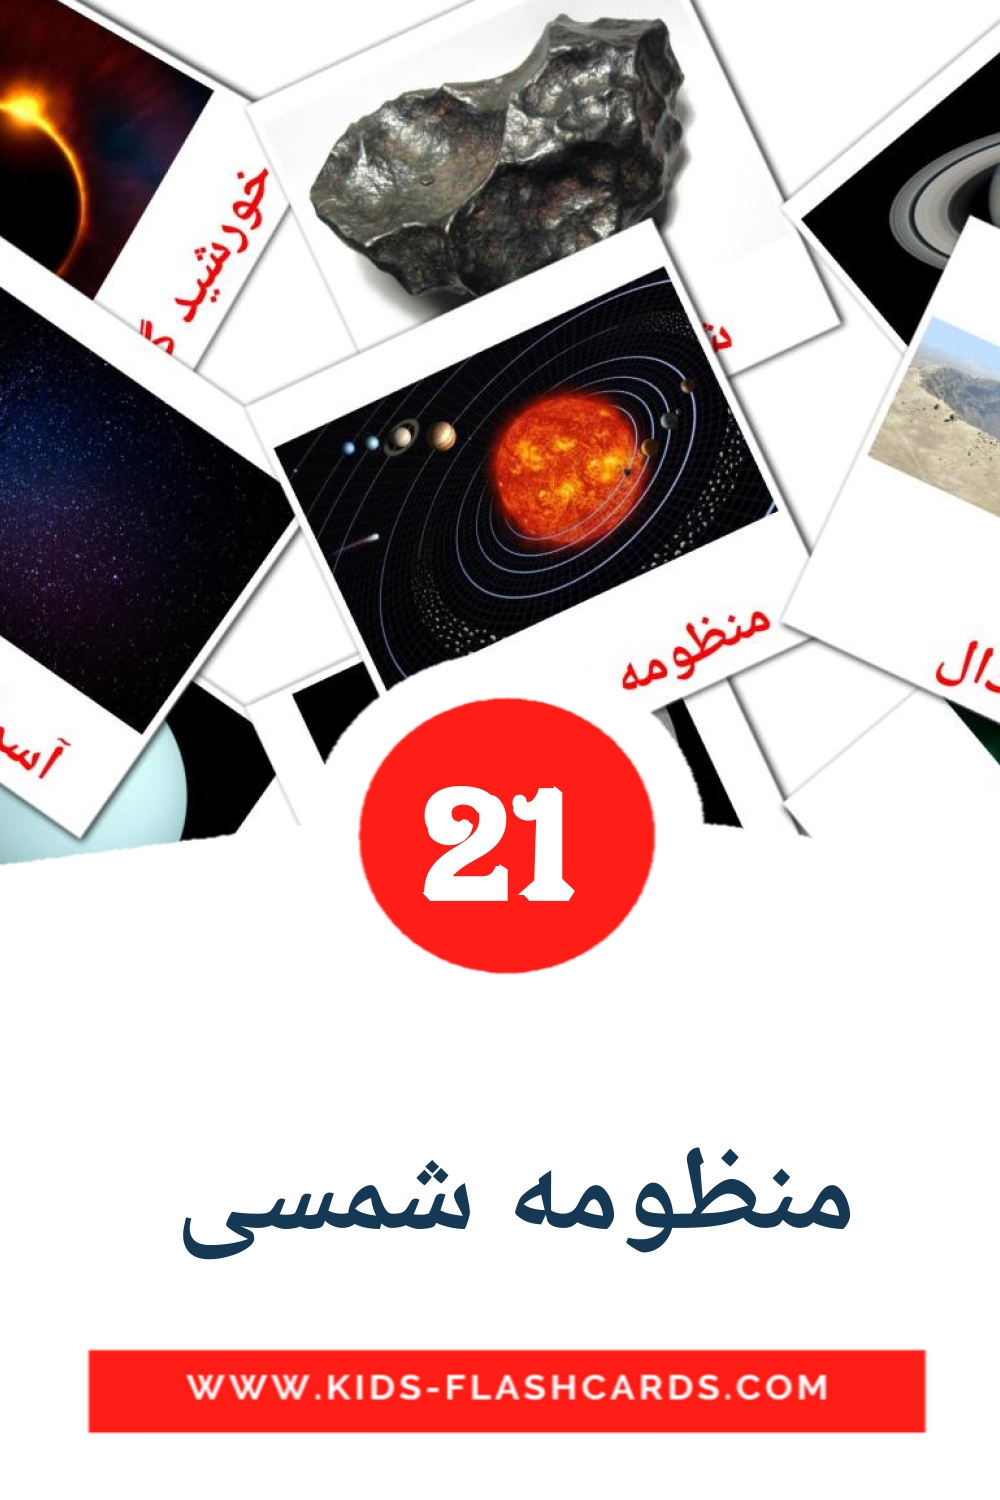 21 carte illustrate di منظومه شمسی  per la scuola materna in persiano